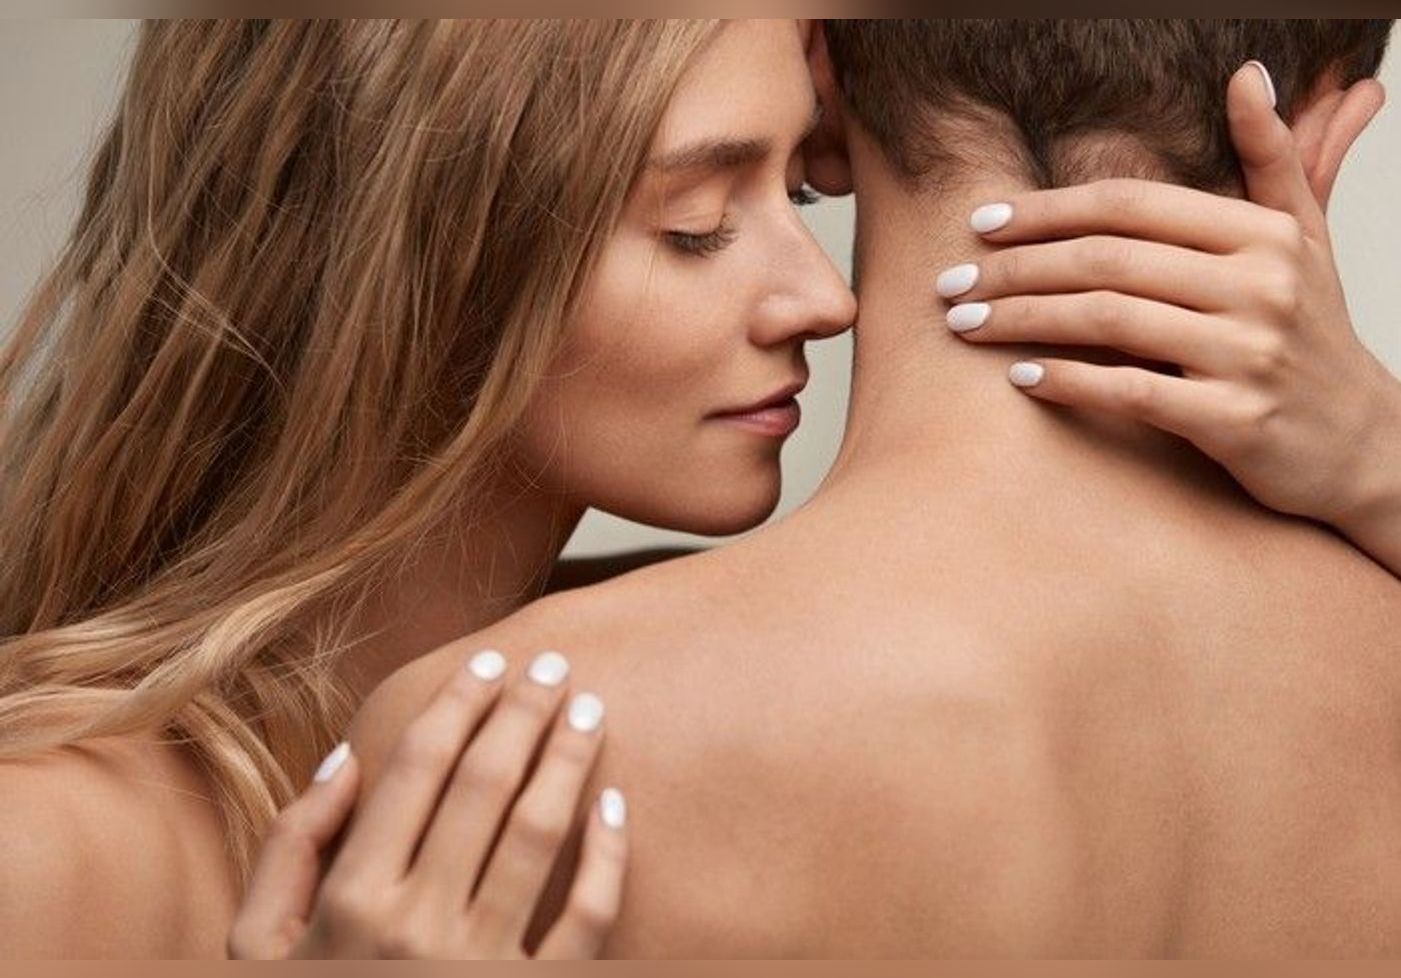 L'odorat joue un rôle primordial dans les rapports sexuels